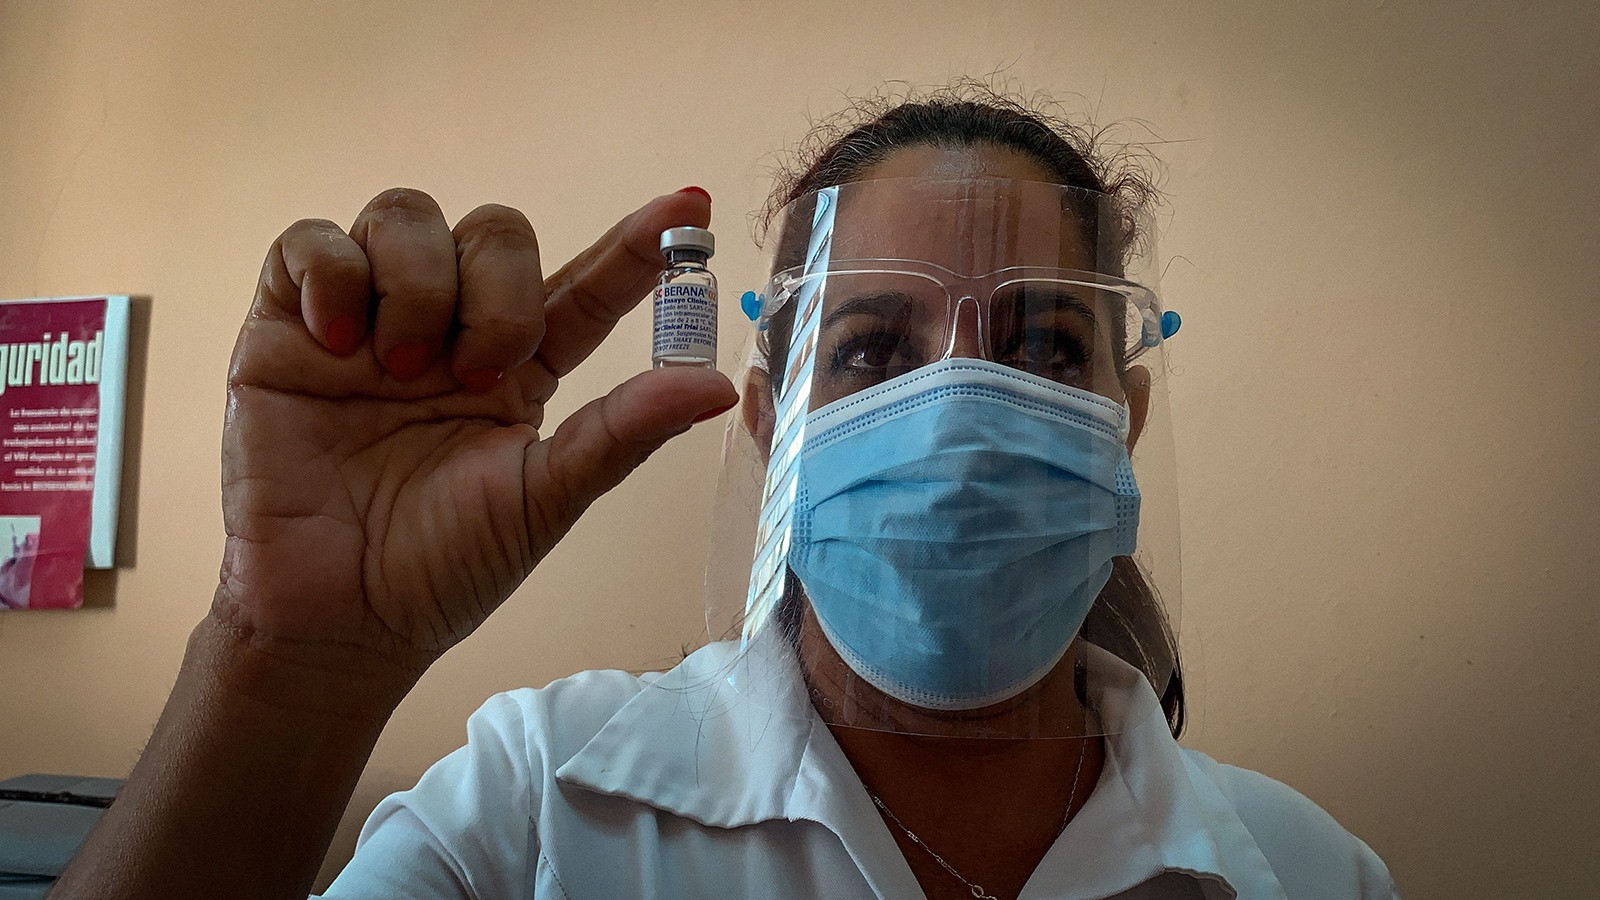 Cuba đến nay có 3 vắc xin ngừa Covid-19 do nước này sản xuất được cấp phép sử dụng khẩn cấp. Ảnh: AP